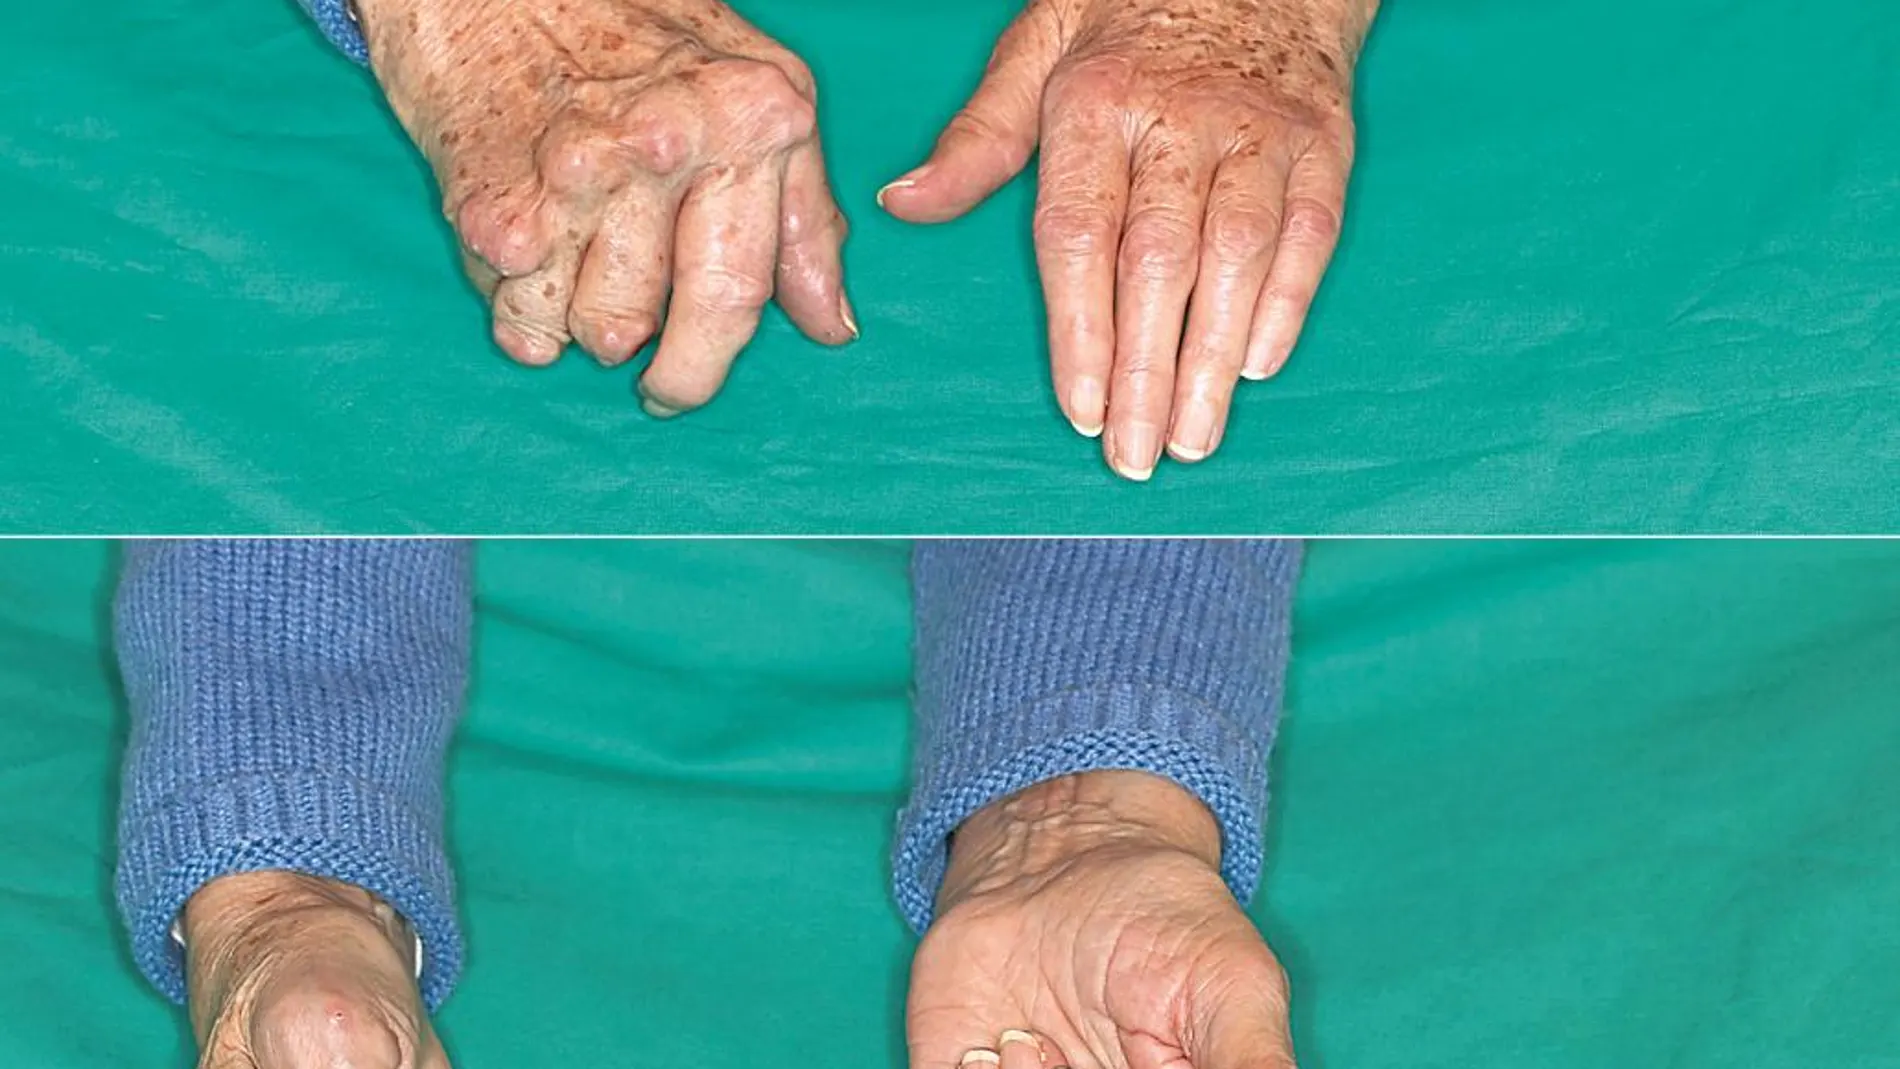 Imágenes en las que se puede apreciar la diferencia entre una mano operada (la de la derecha) y otra que no (la de la izquierda) y en las que se ve que la capacidad de extensión de los dedos es nula en la no operada así como la deformidad